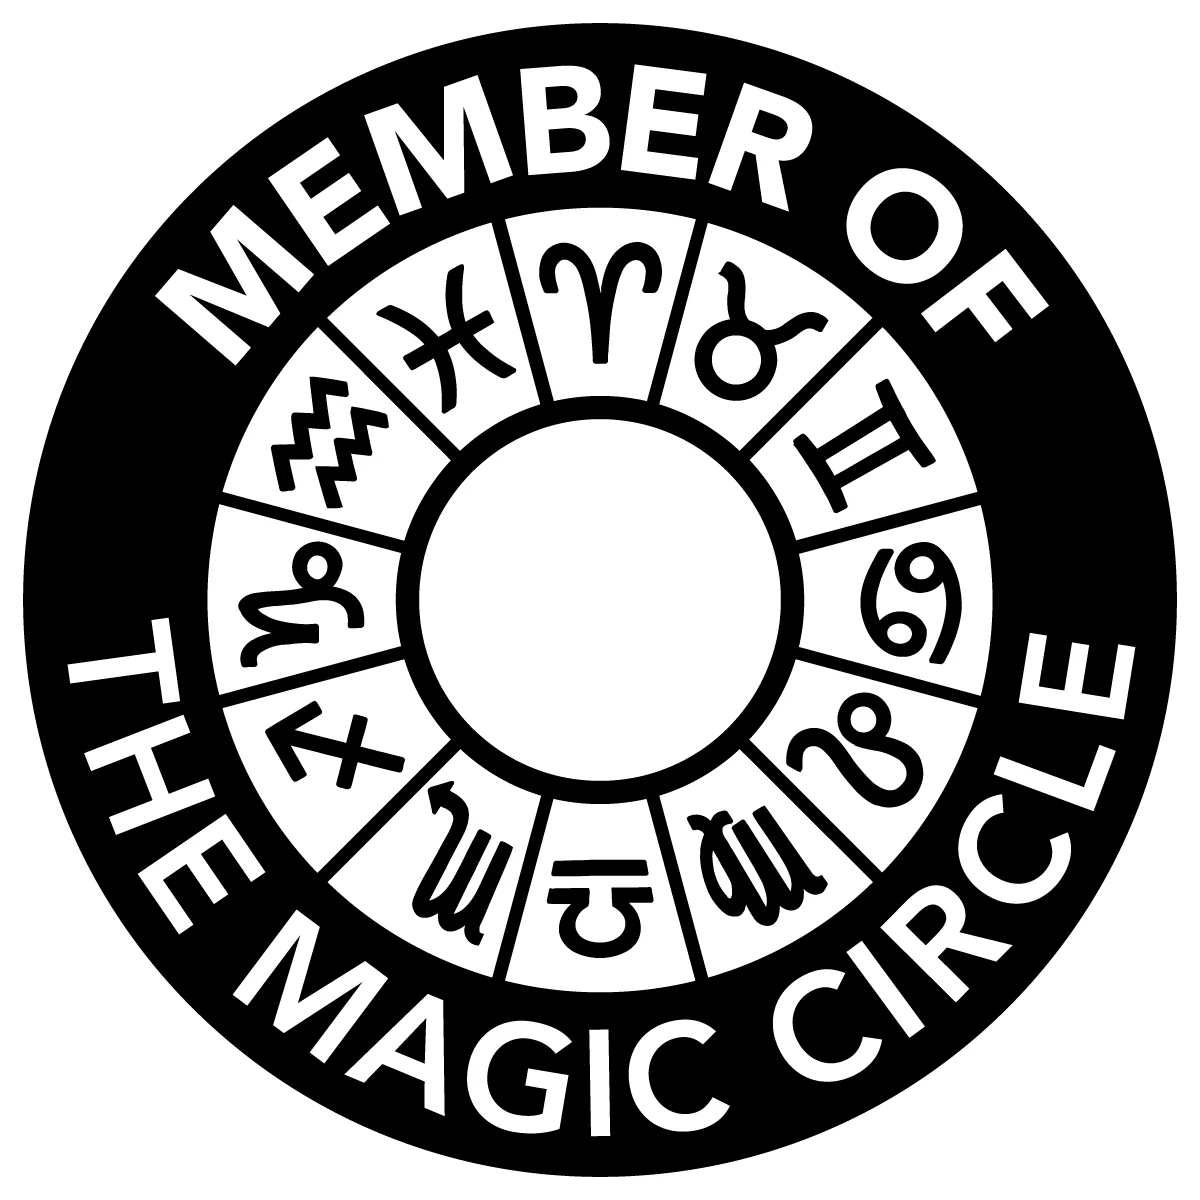 TMC-Member-of-mark-RGB-black